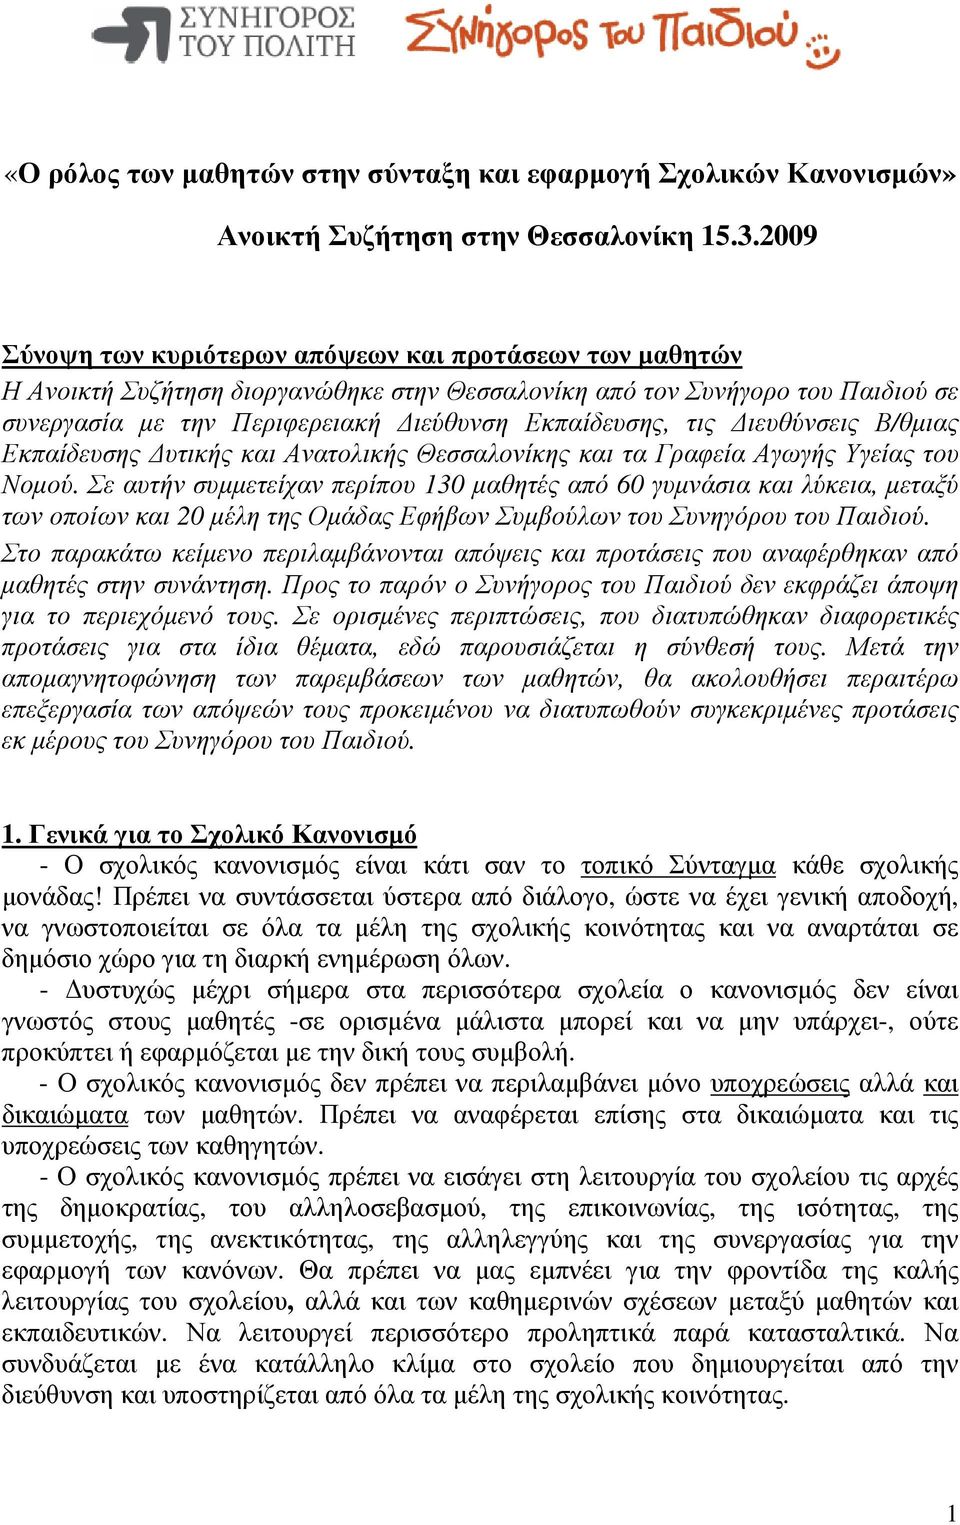 ιευθύνσεις Β/θµιας Εκπαίδευσης υτικής και Ανατολικής Θεσσαλονίκης και τα Γραφεία Αγωγής Υγείας του Νοµού.